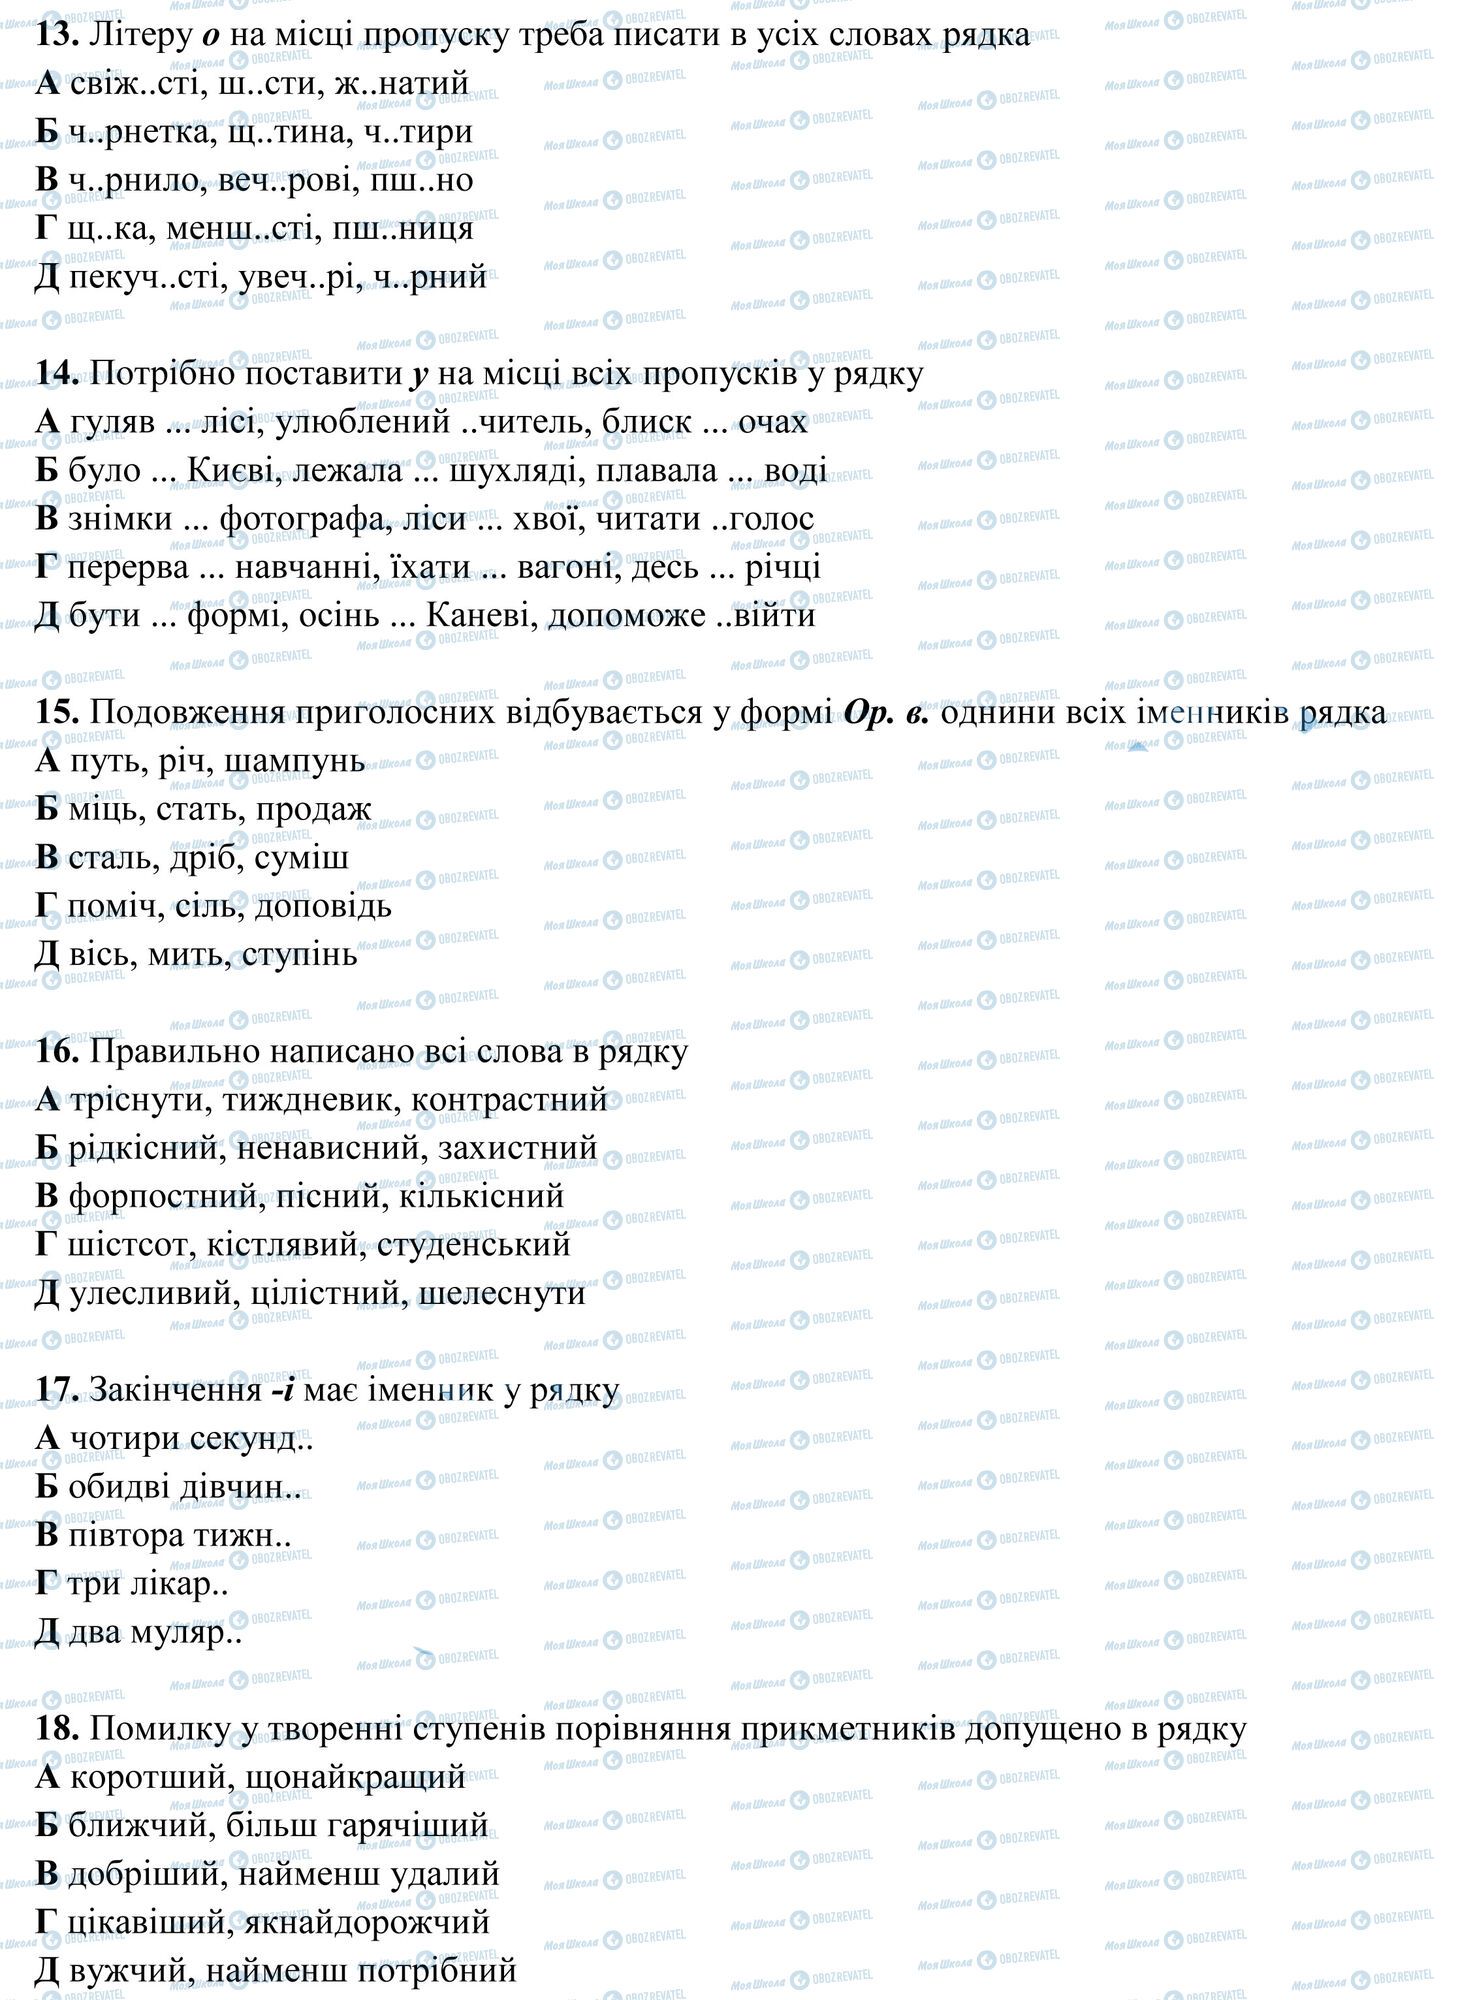 ЗНО Укр мова 11 класс страница 3